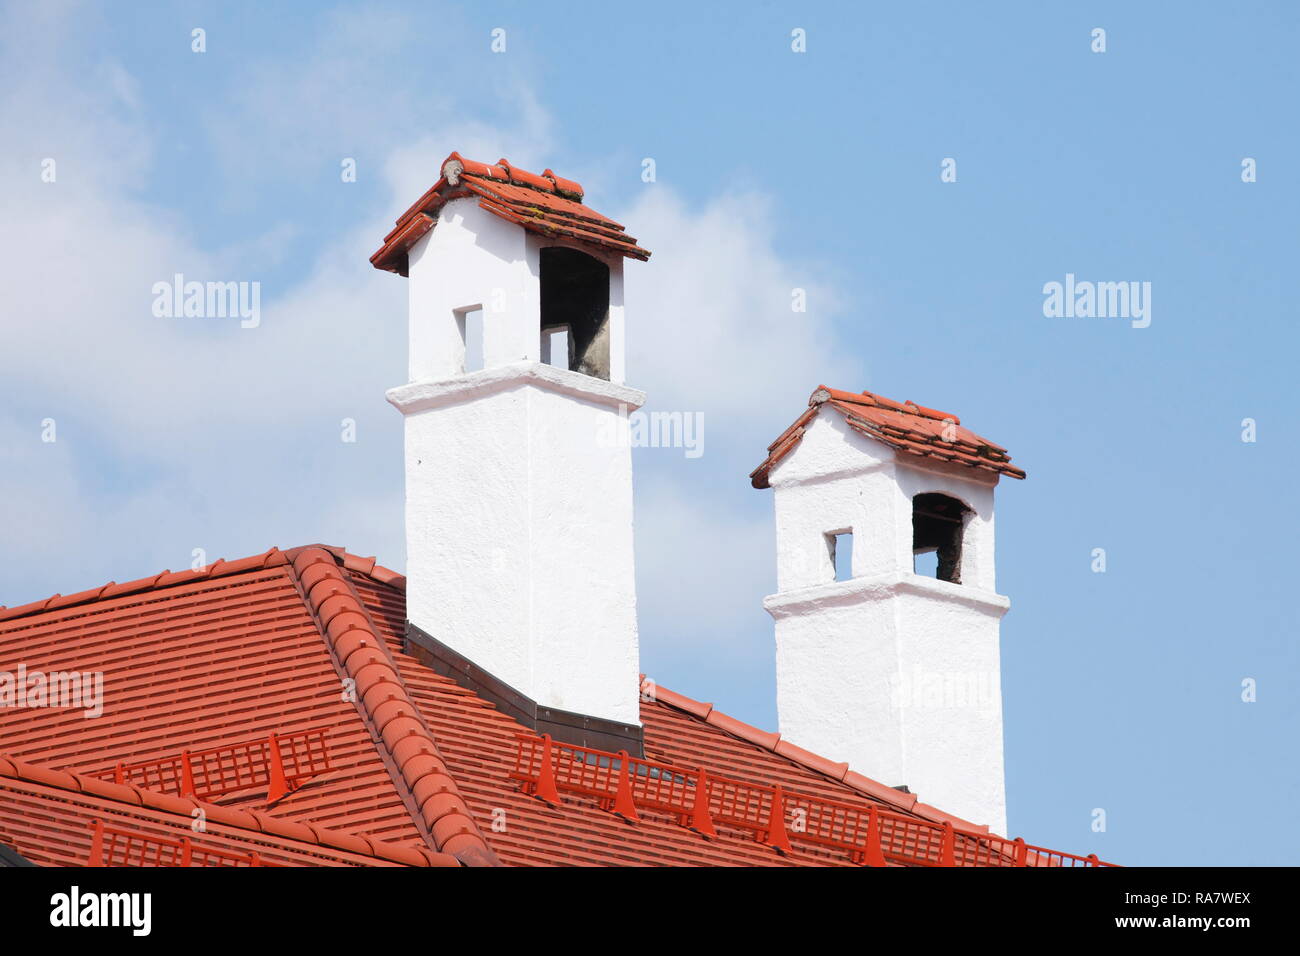 White chimneys made of stone on the roof of a house, Tegernsee, Upper Bavaria, Bavaria, Germany, Europe I  Weisse Schornsteine aus Stein auf dem Dach  Stock Photo